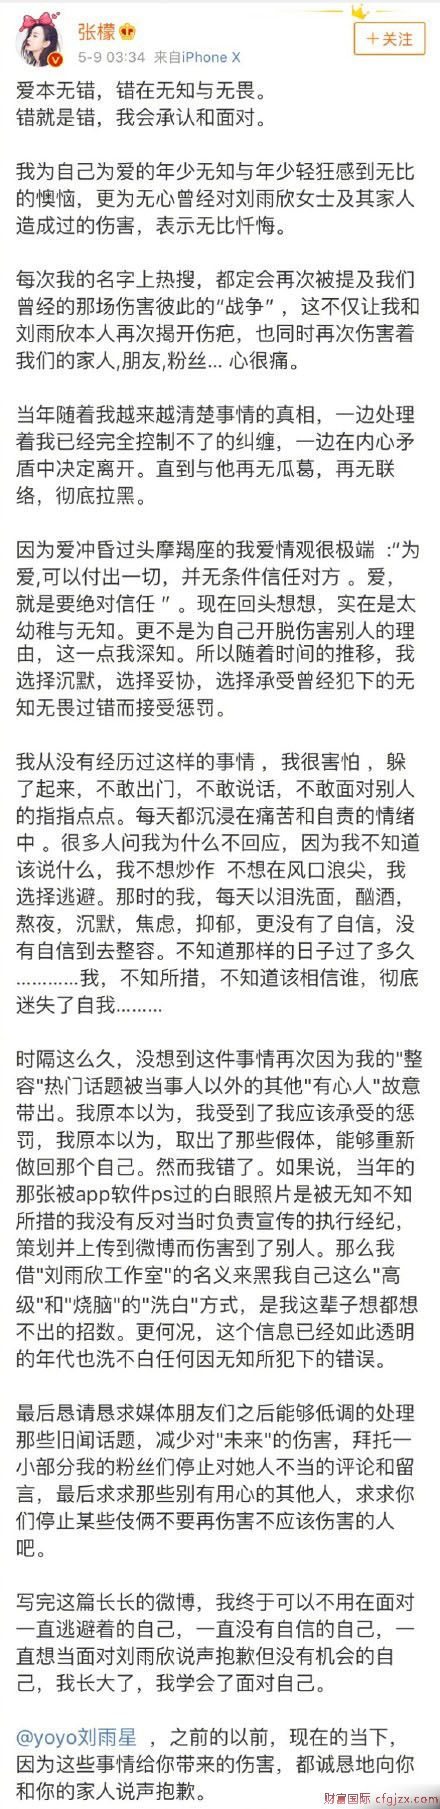 张檬承认插足刘雨欣家庭并发博道歉